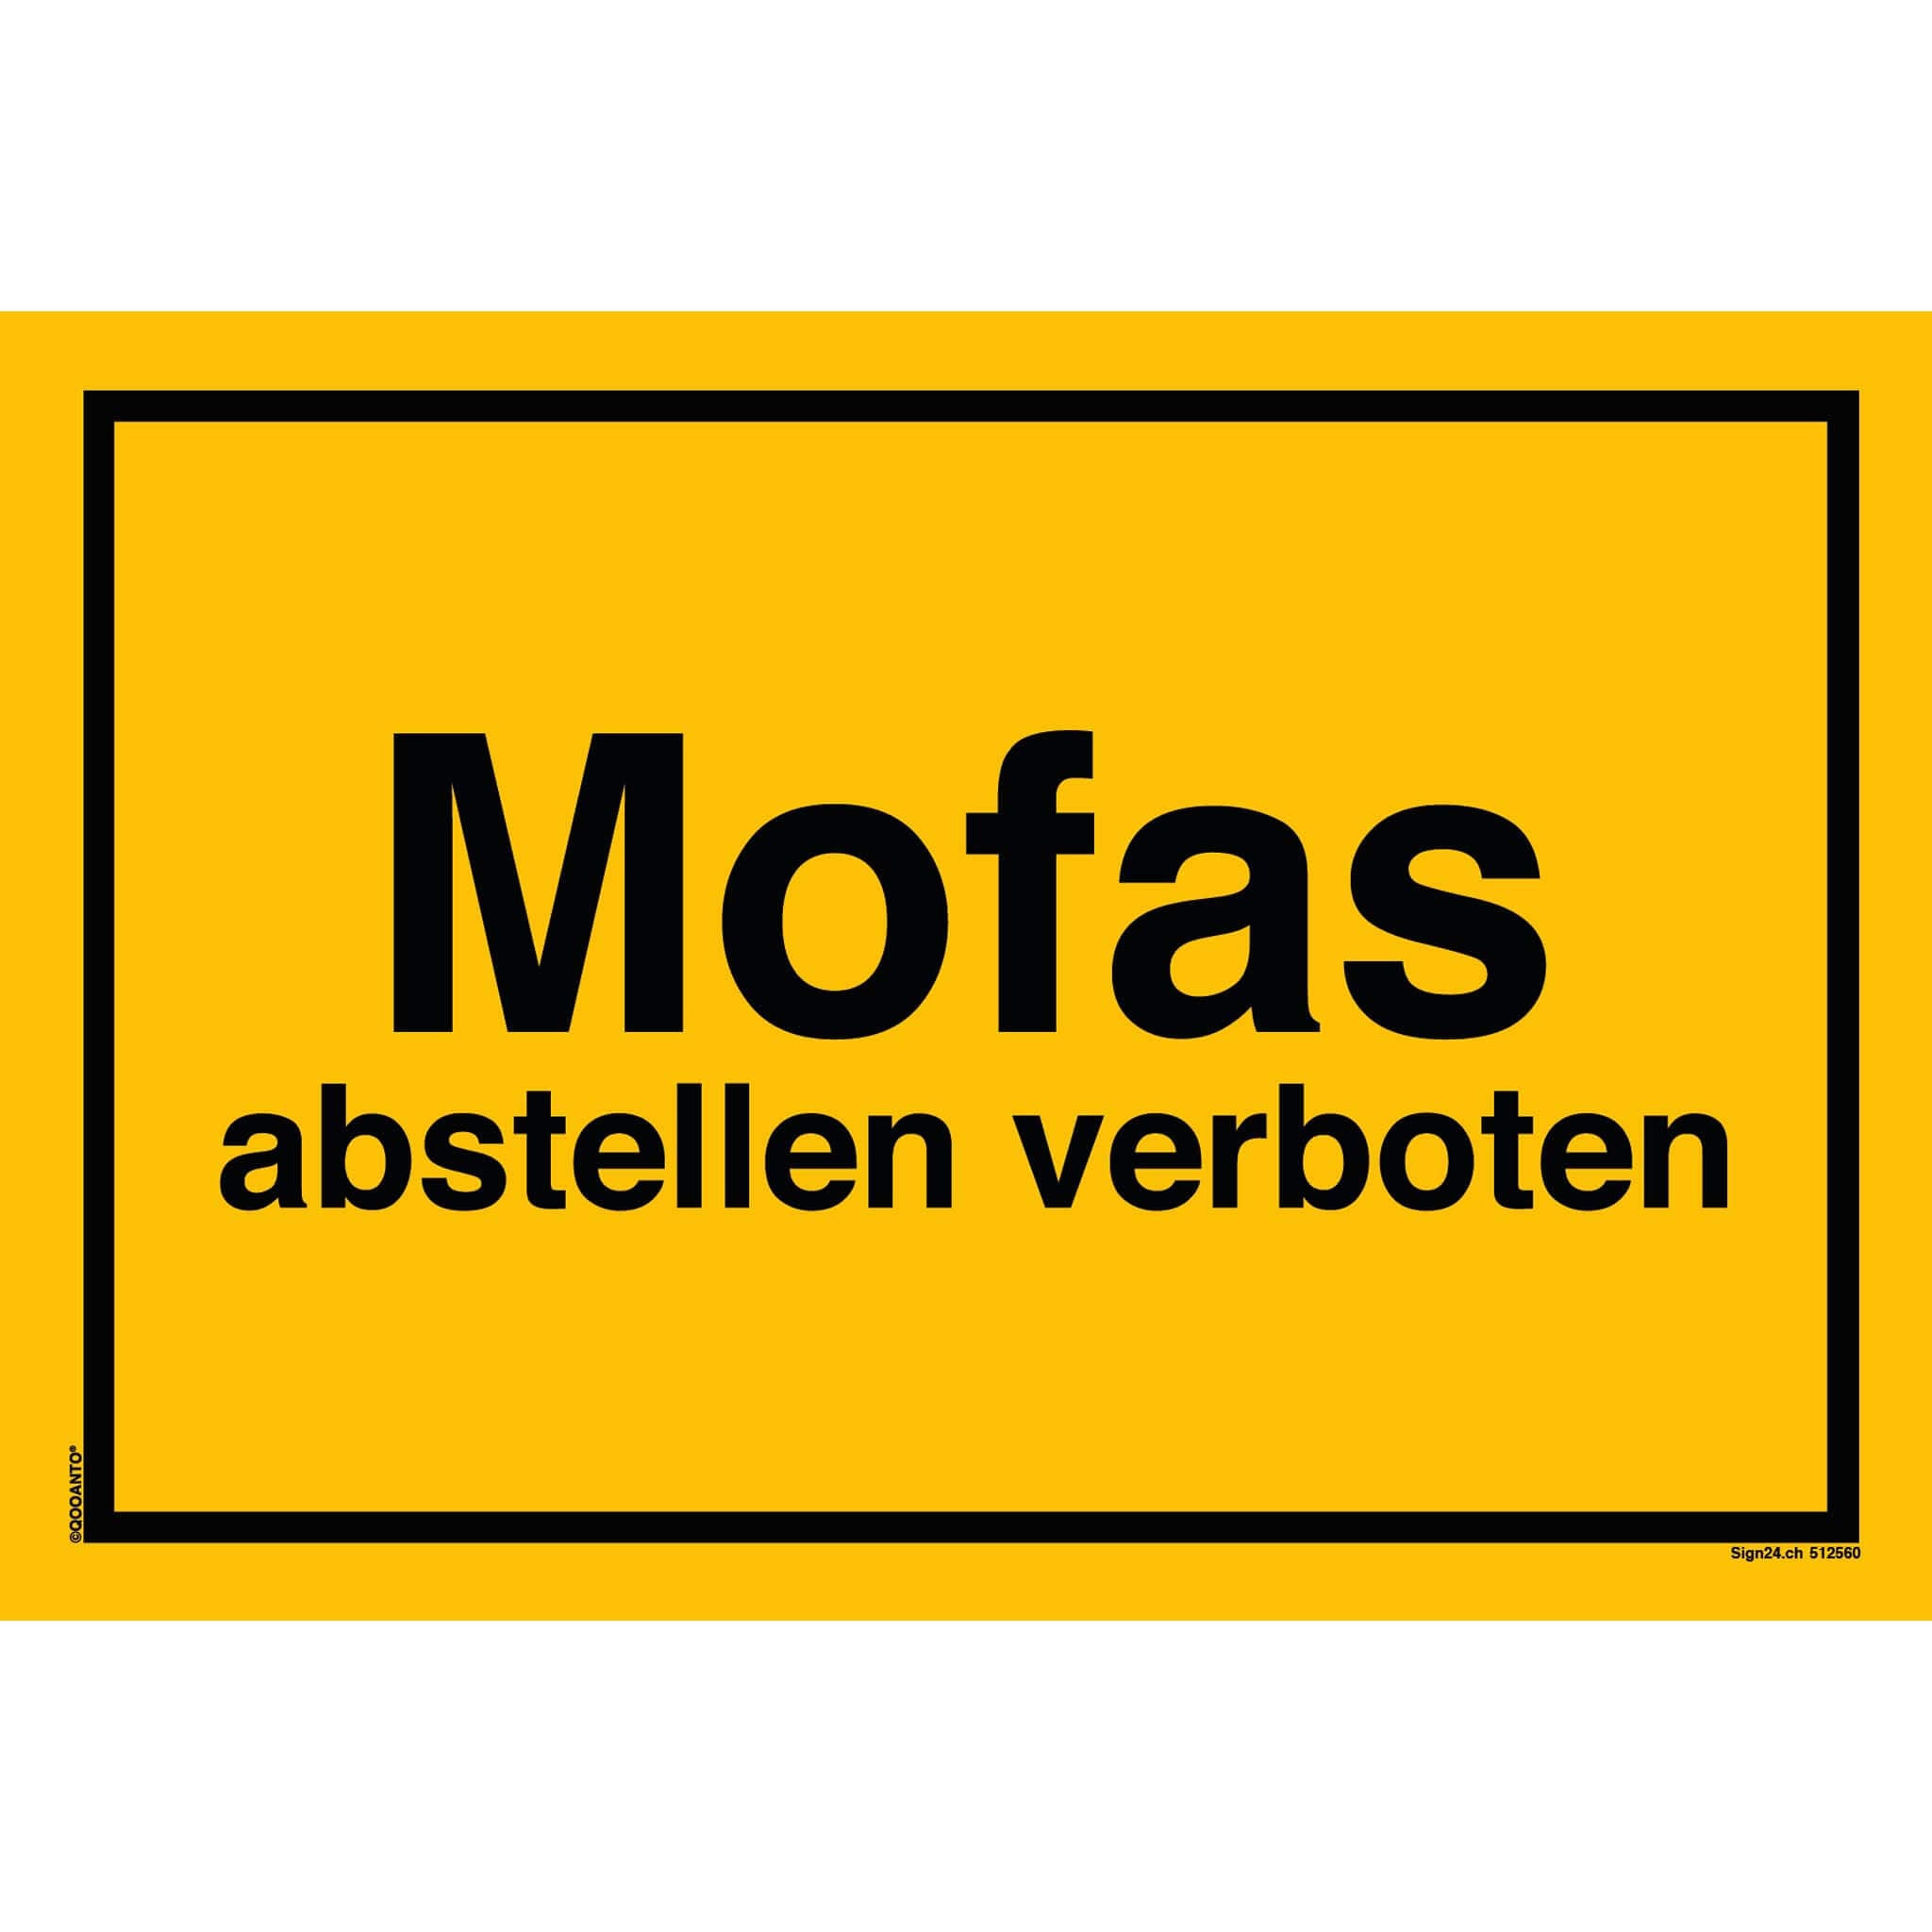 Mofas abstellen verboten, gelb, Schild